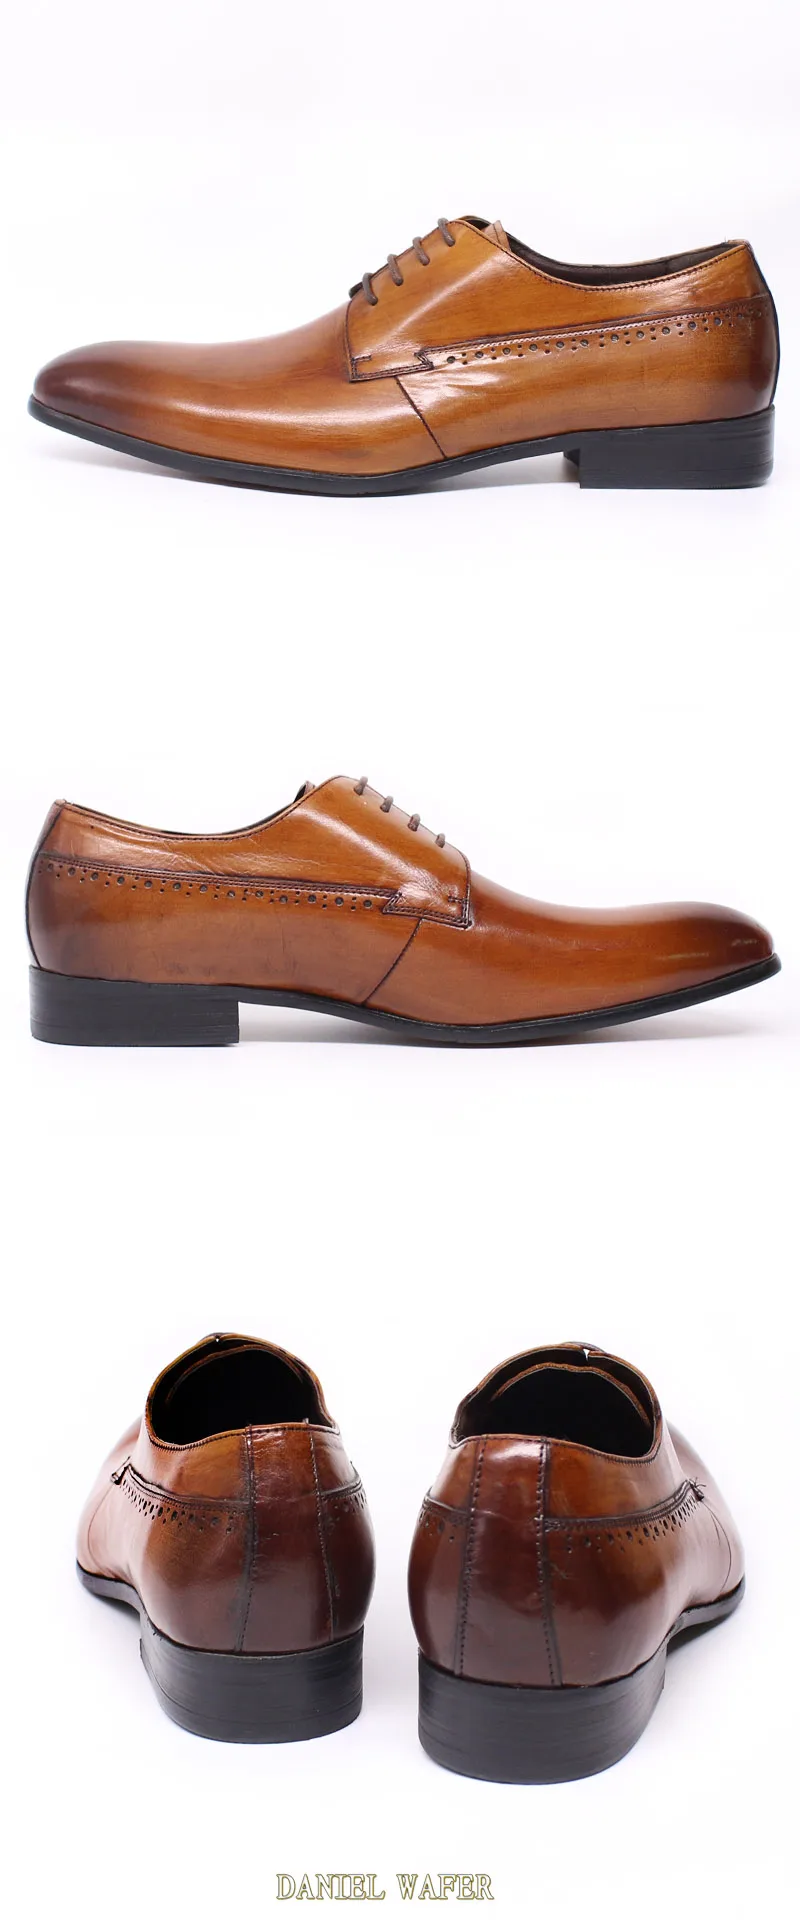 Мужские кожаные туфли деловое офисное платье в классическом стиле; Цвет Кофейный, коричневый, черный; мужские туфли-оксфорды на шнуровке с острым носком